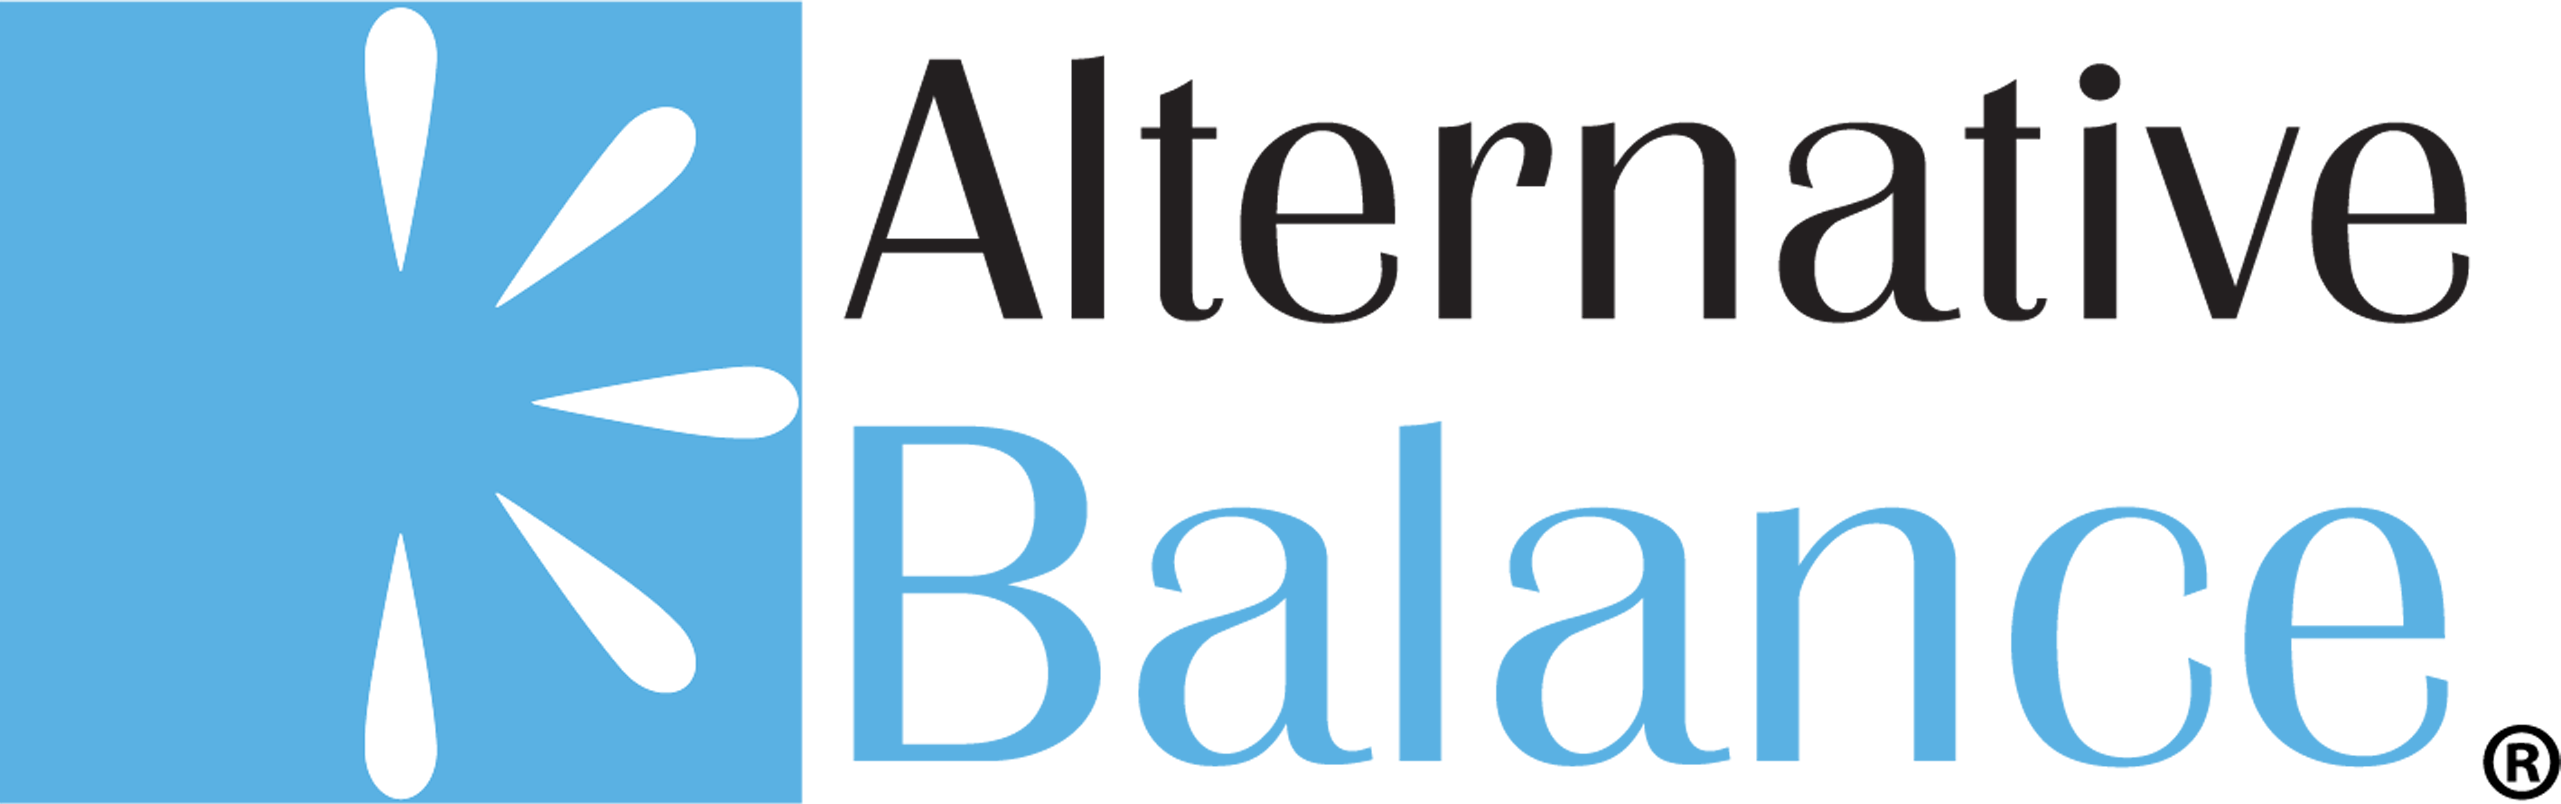 Alternative Balance coupons logo